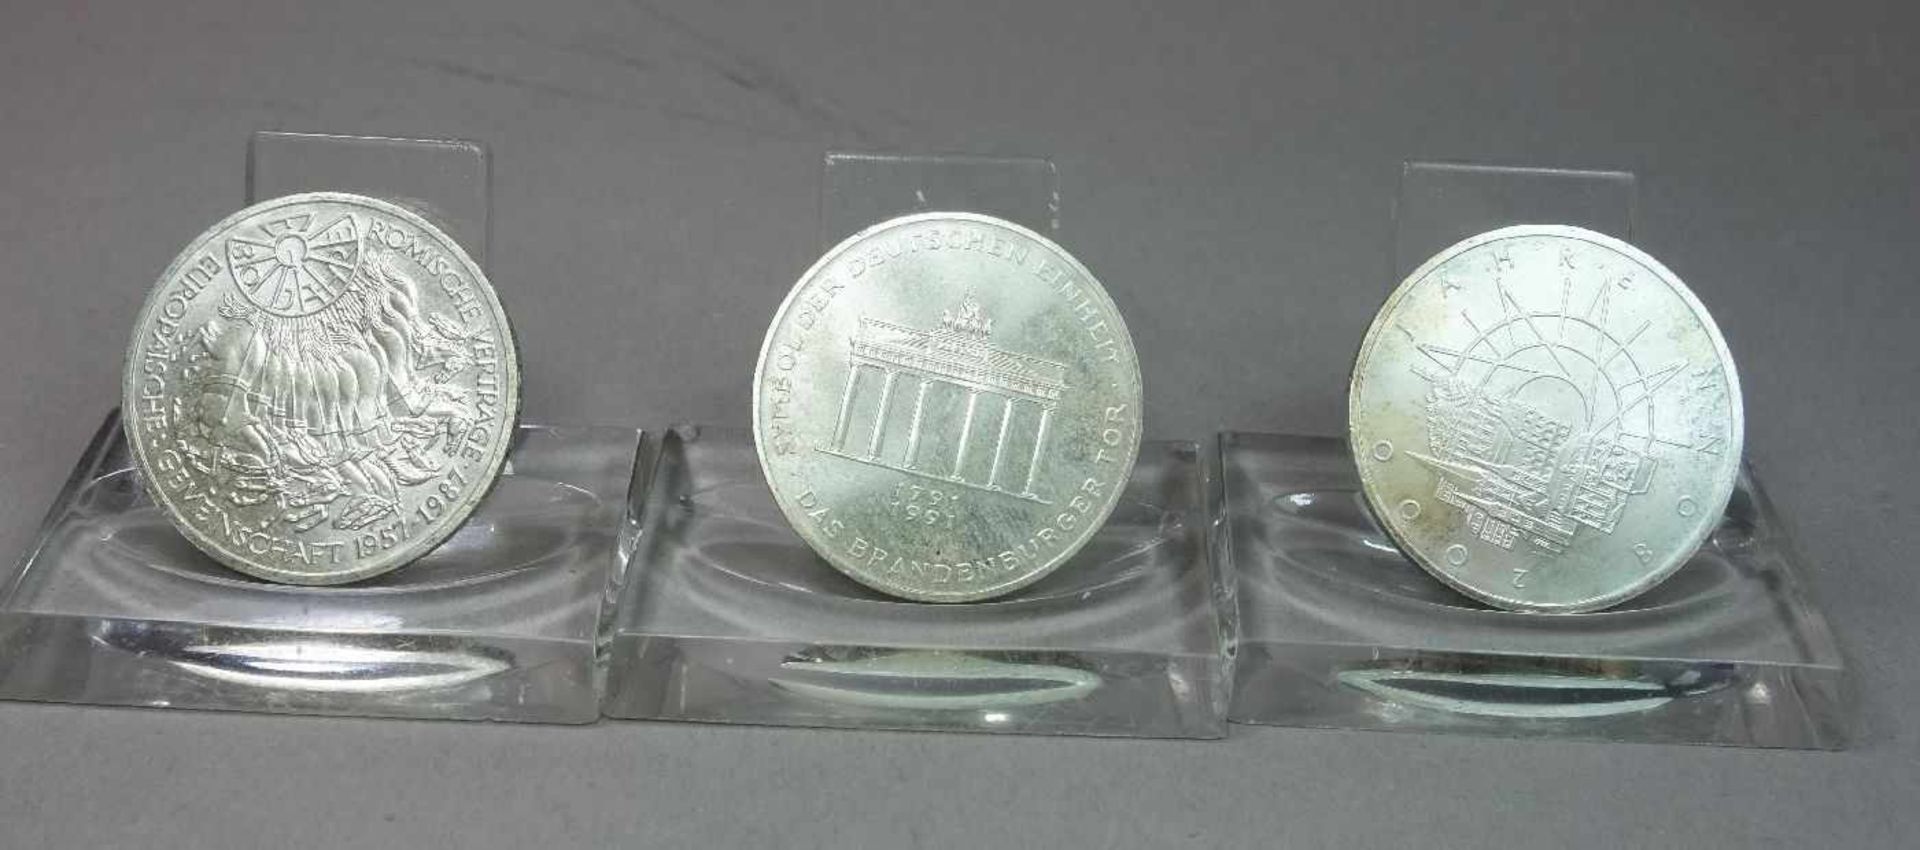 KONVOLUT MÜNZEN: 11 x 10 DM STÜCKE / coins, BRD Deutschland, unterschiedliche Jahrgänge: 1) 1989, G, - Image 3 of 7